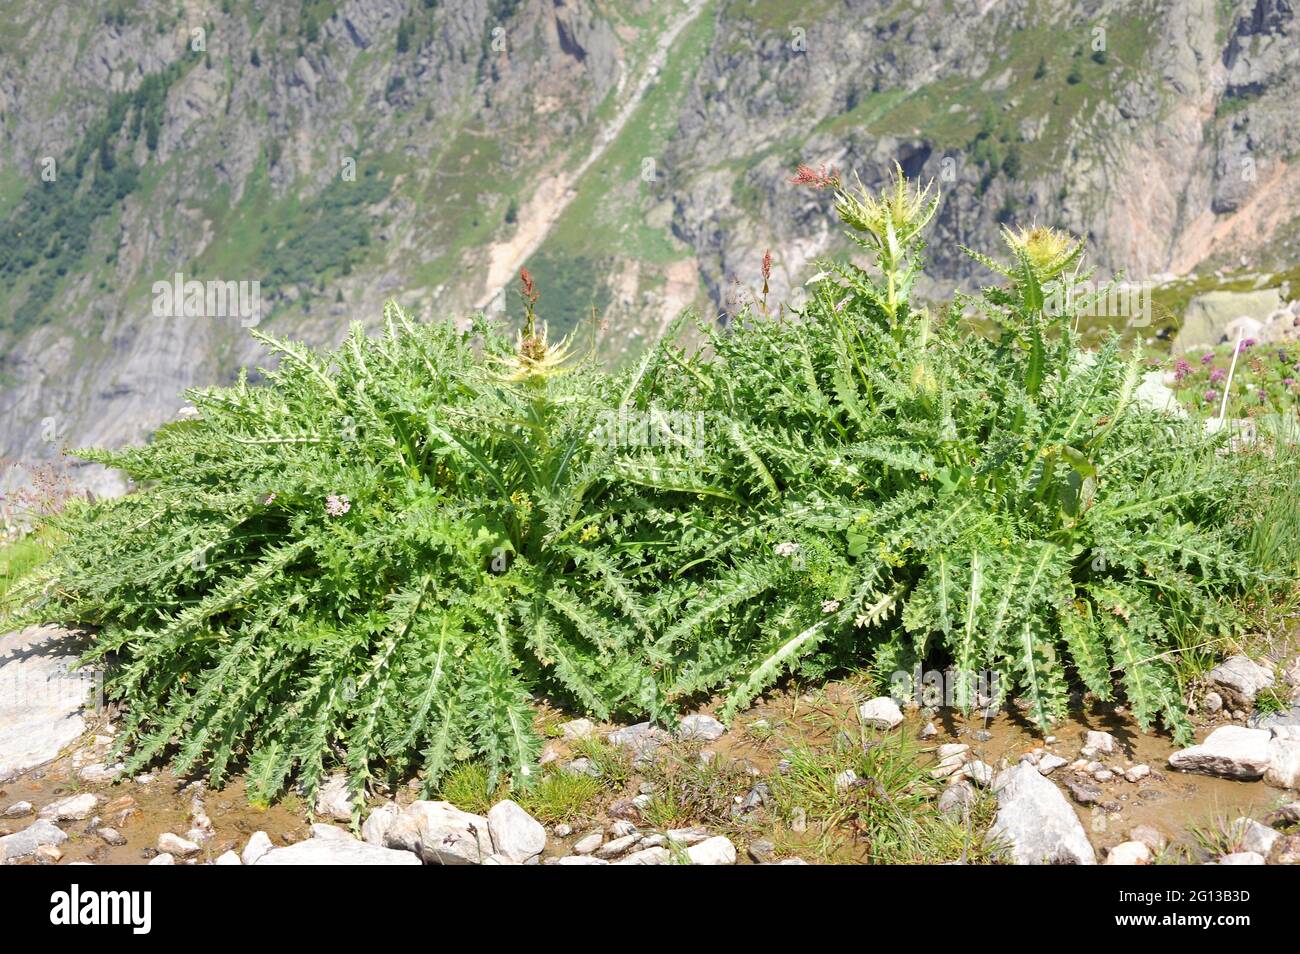 Il tistolo Spiniest (Cirsium spinosissimum) è una pianta perenne spinosa originaria delle Alpi e dei Balcani. Questa foto è stata scattata nelle Alpi francesi, vicino a Chamonix. Foto Stock